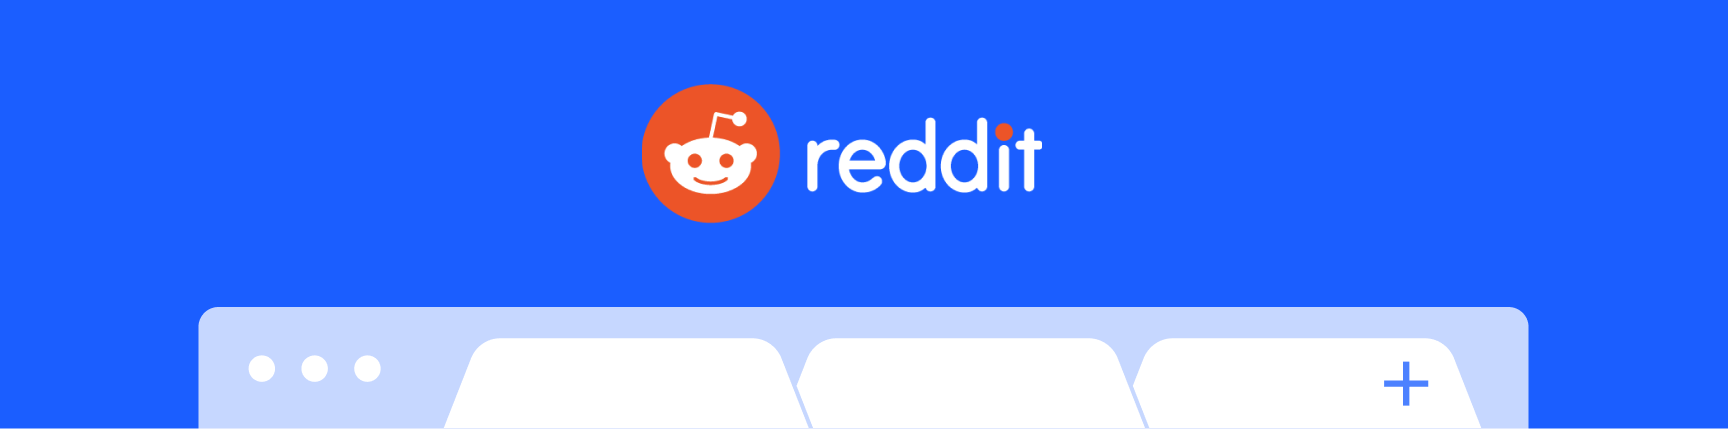 Reddit logo and browser bar set agains a blue background